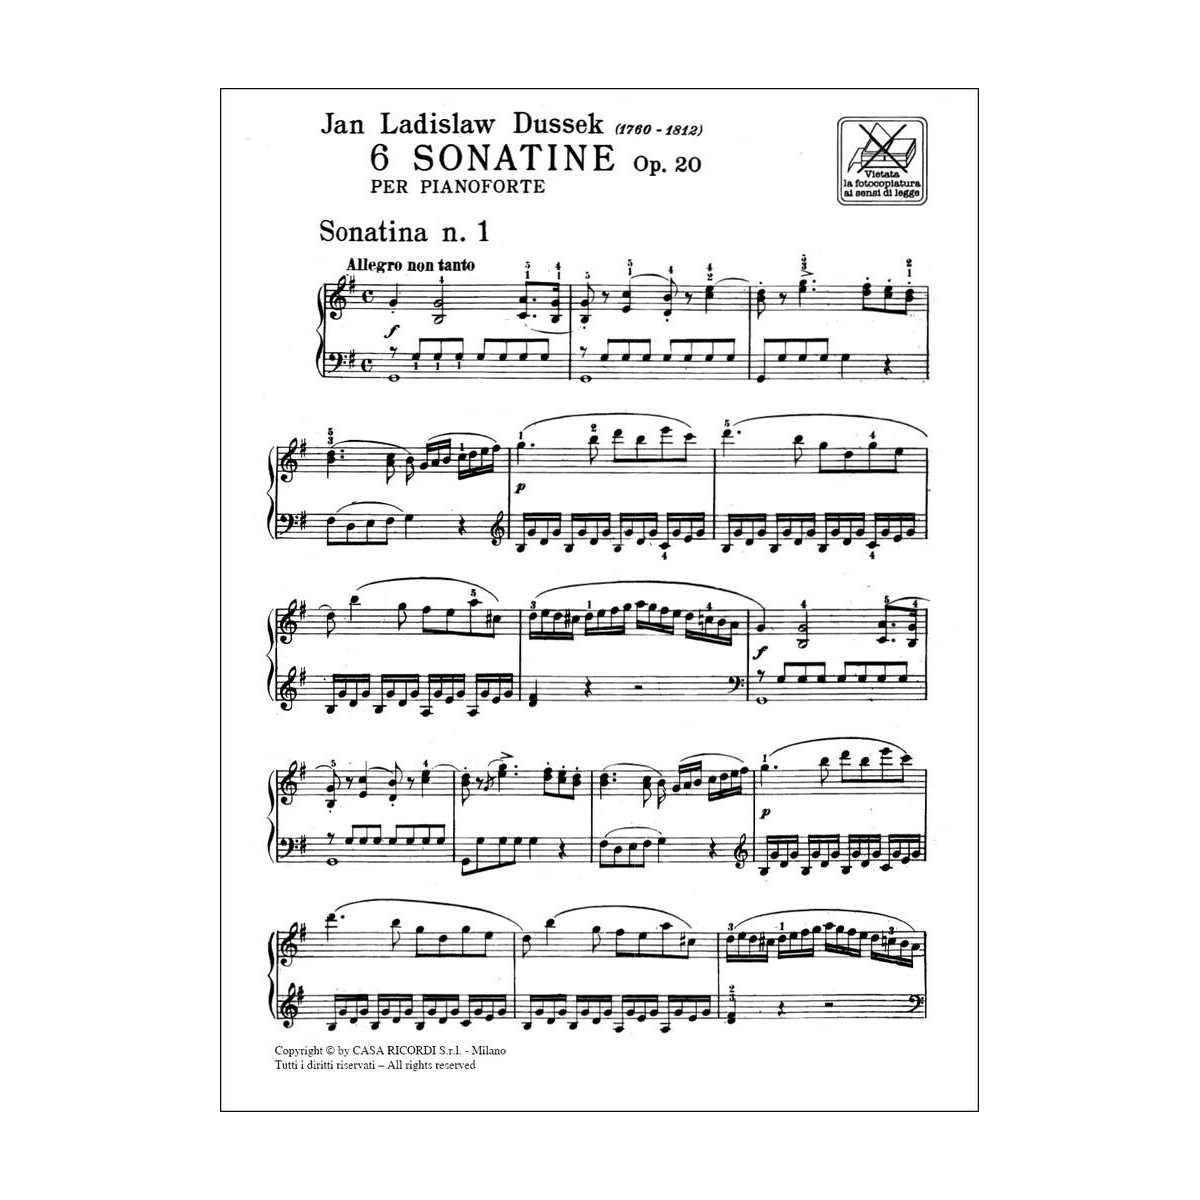 Dussek: 6 SONATINE OP. 20 per Pianoforte